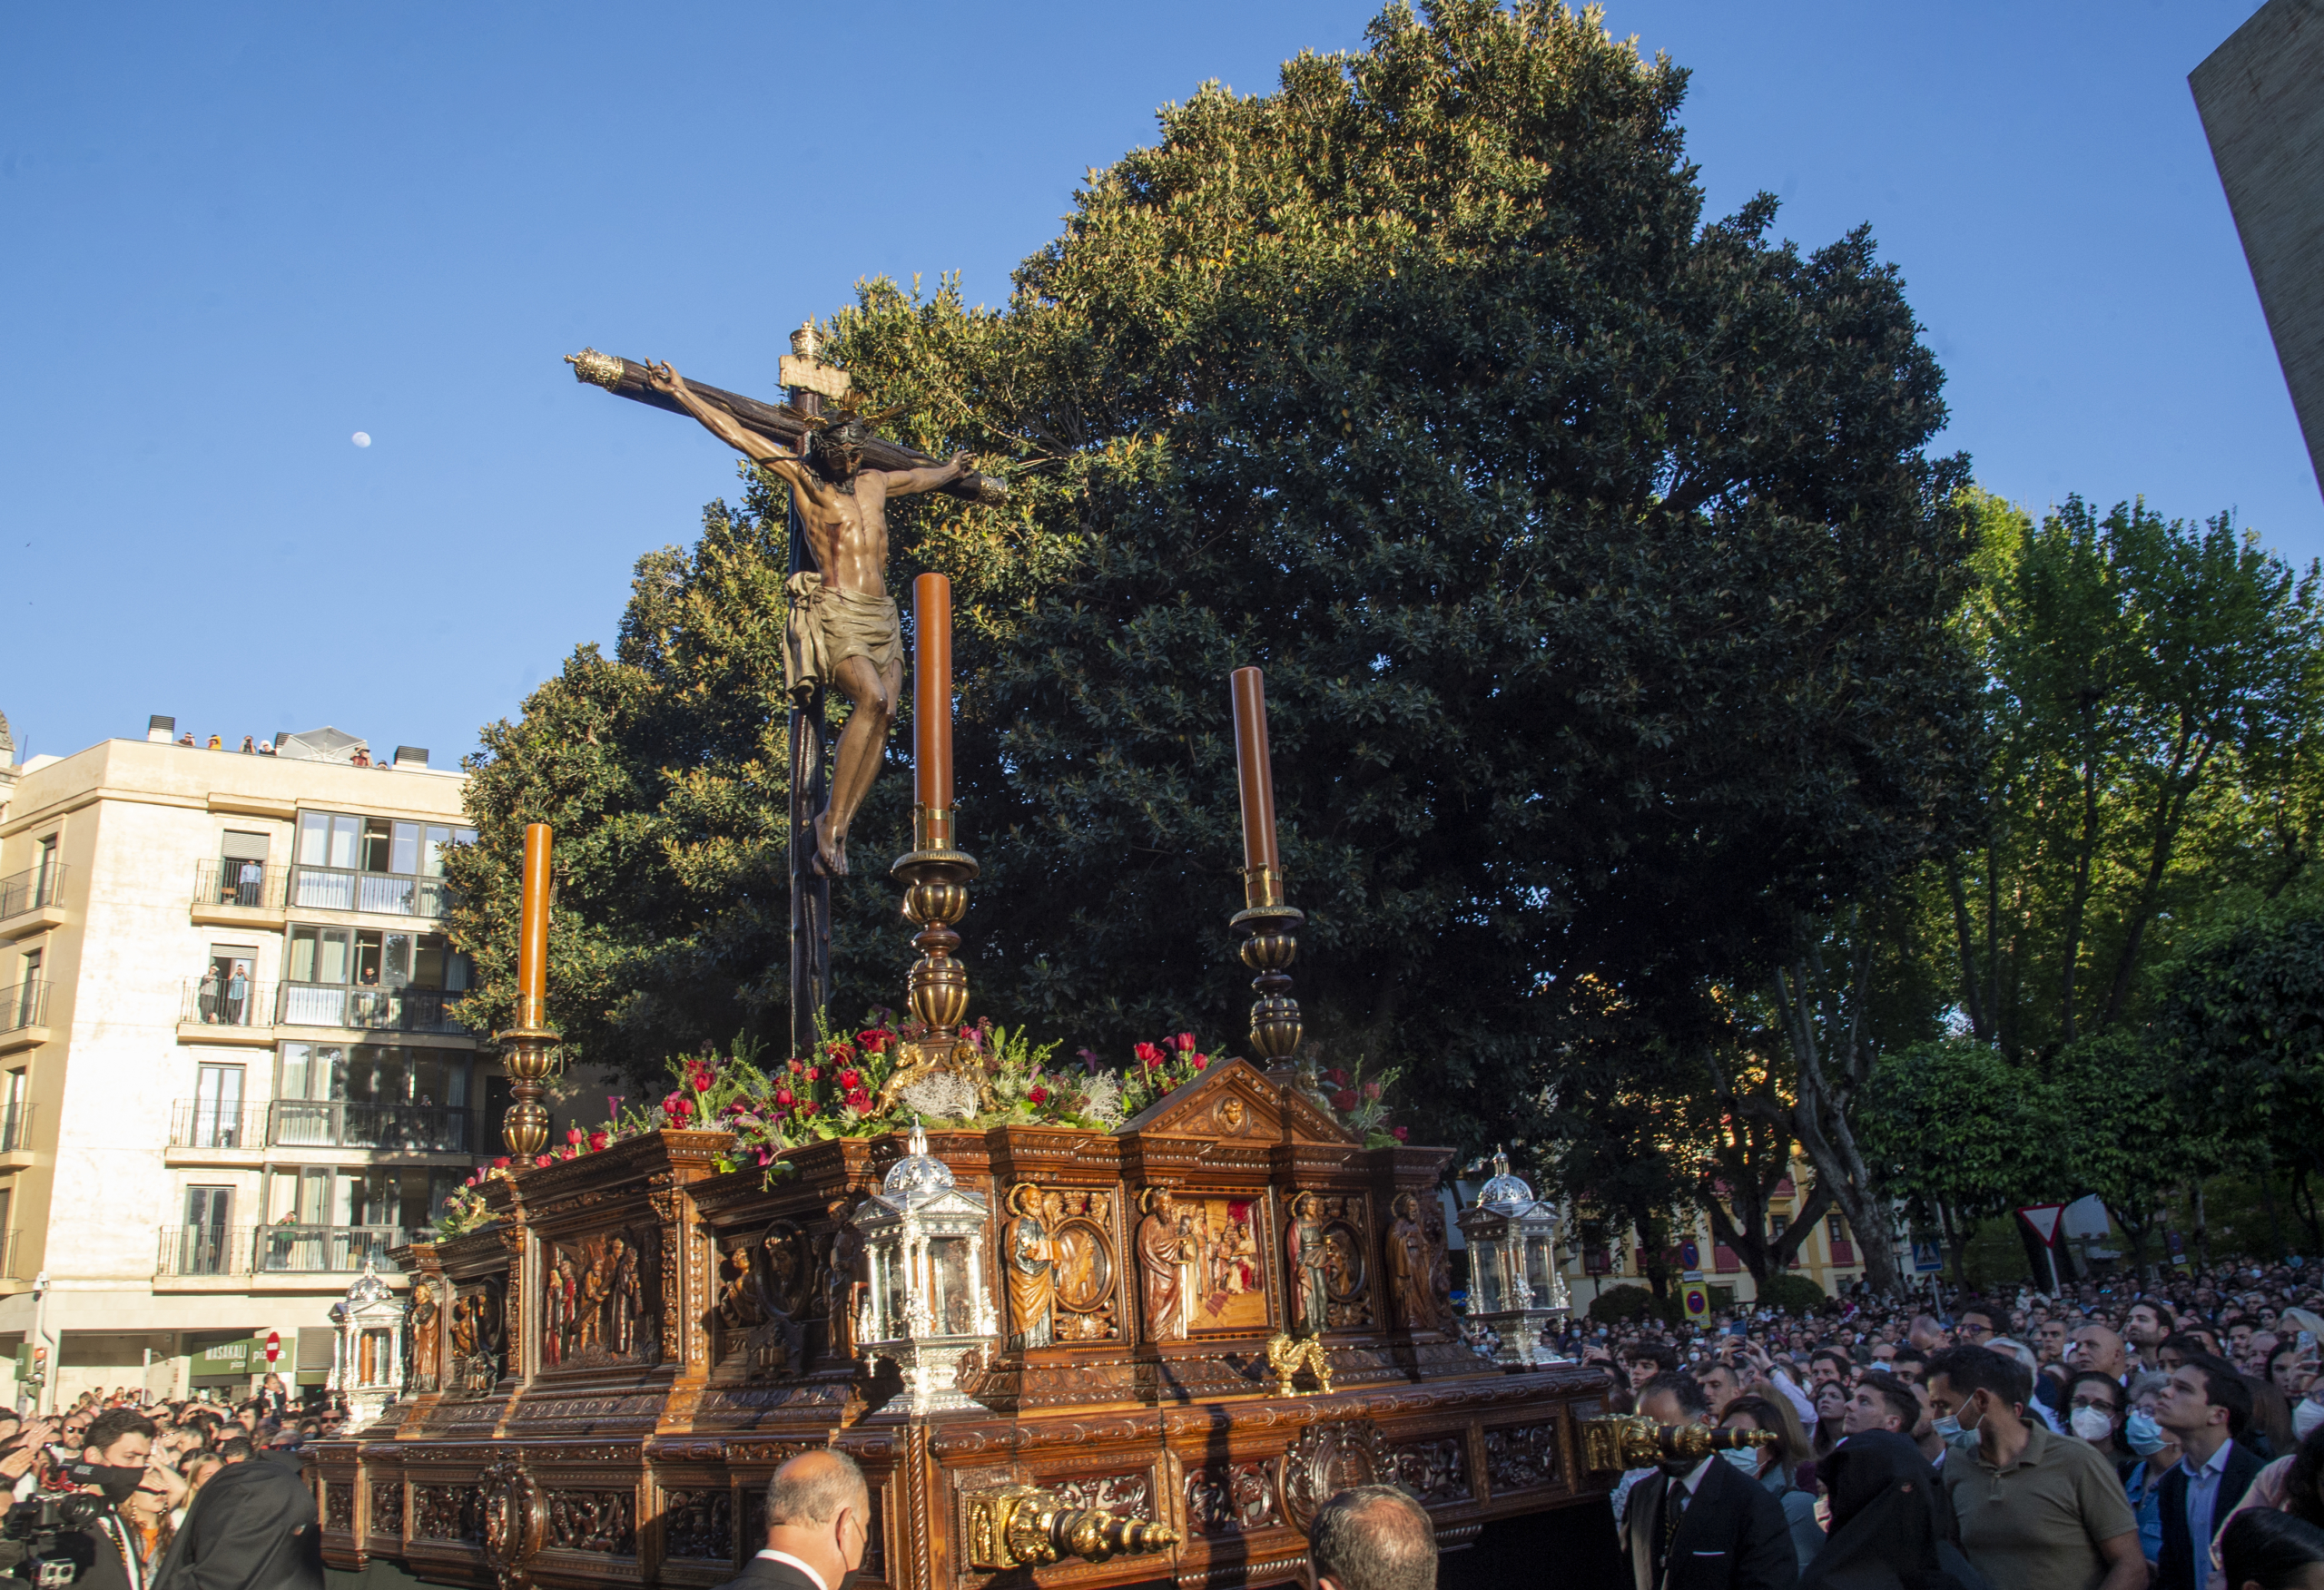 Calendario de ensayos para la salida conmemorativa del 450 aniversario del Santísimo Cristo de Burgos